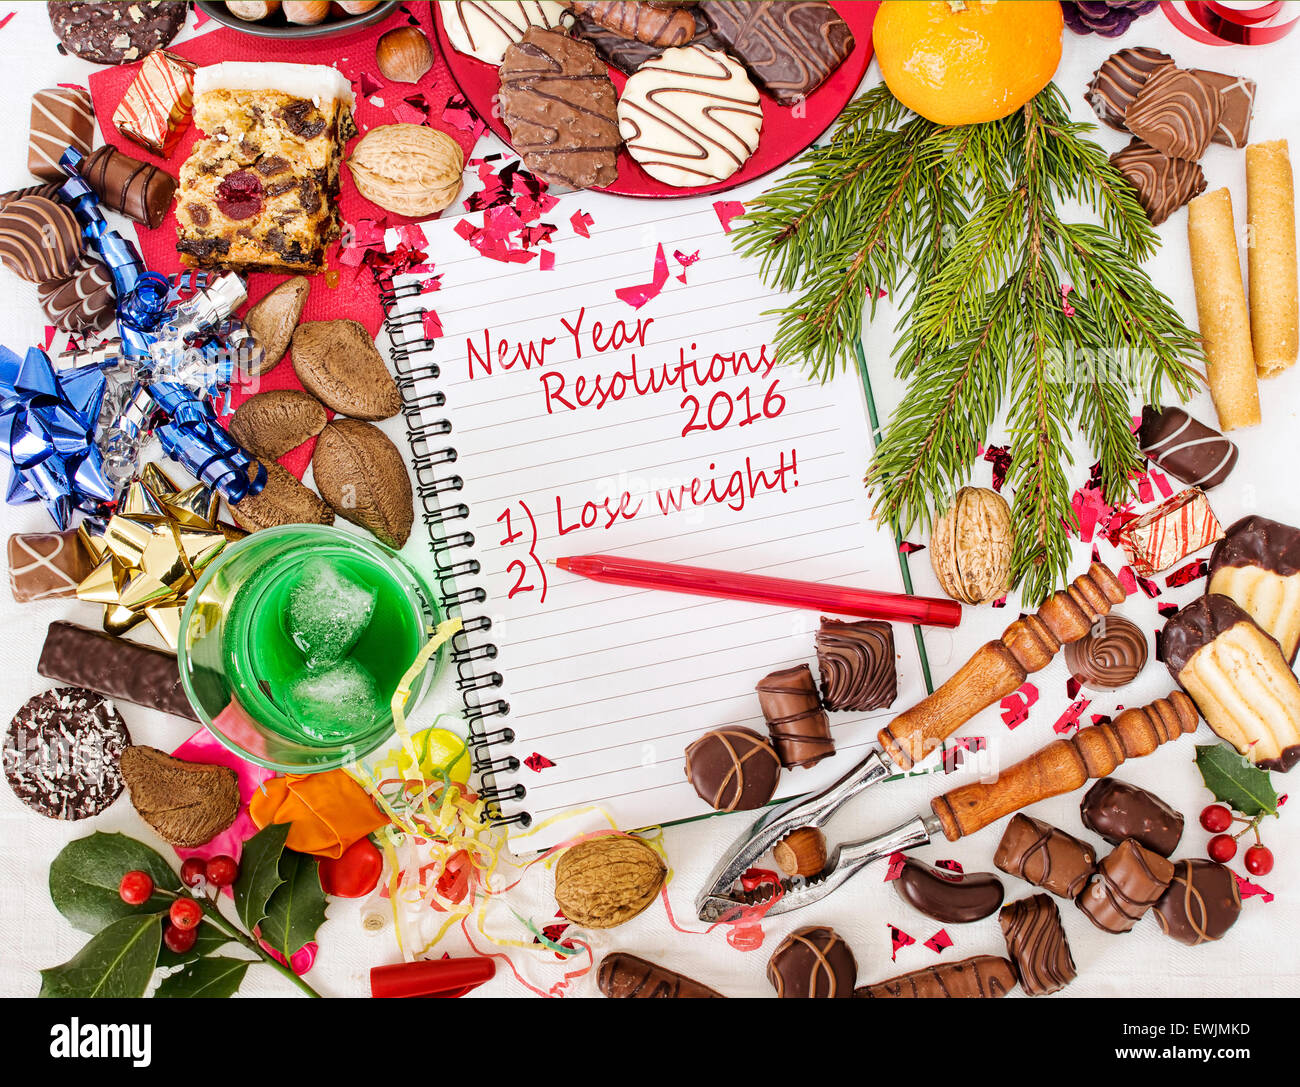 Übermaß an Weihnachten- dann Auflösung, Gewicht zu verlieren. Humor. Stockfoto